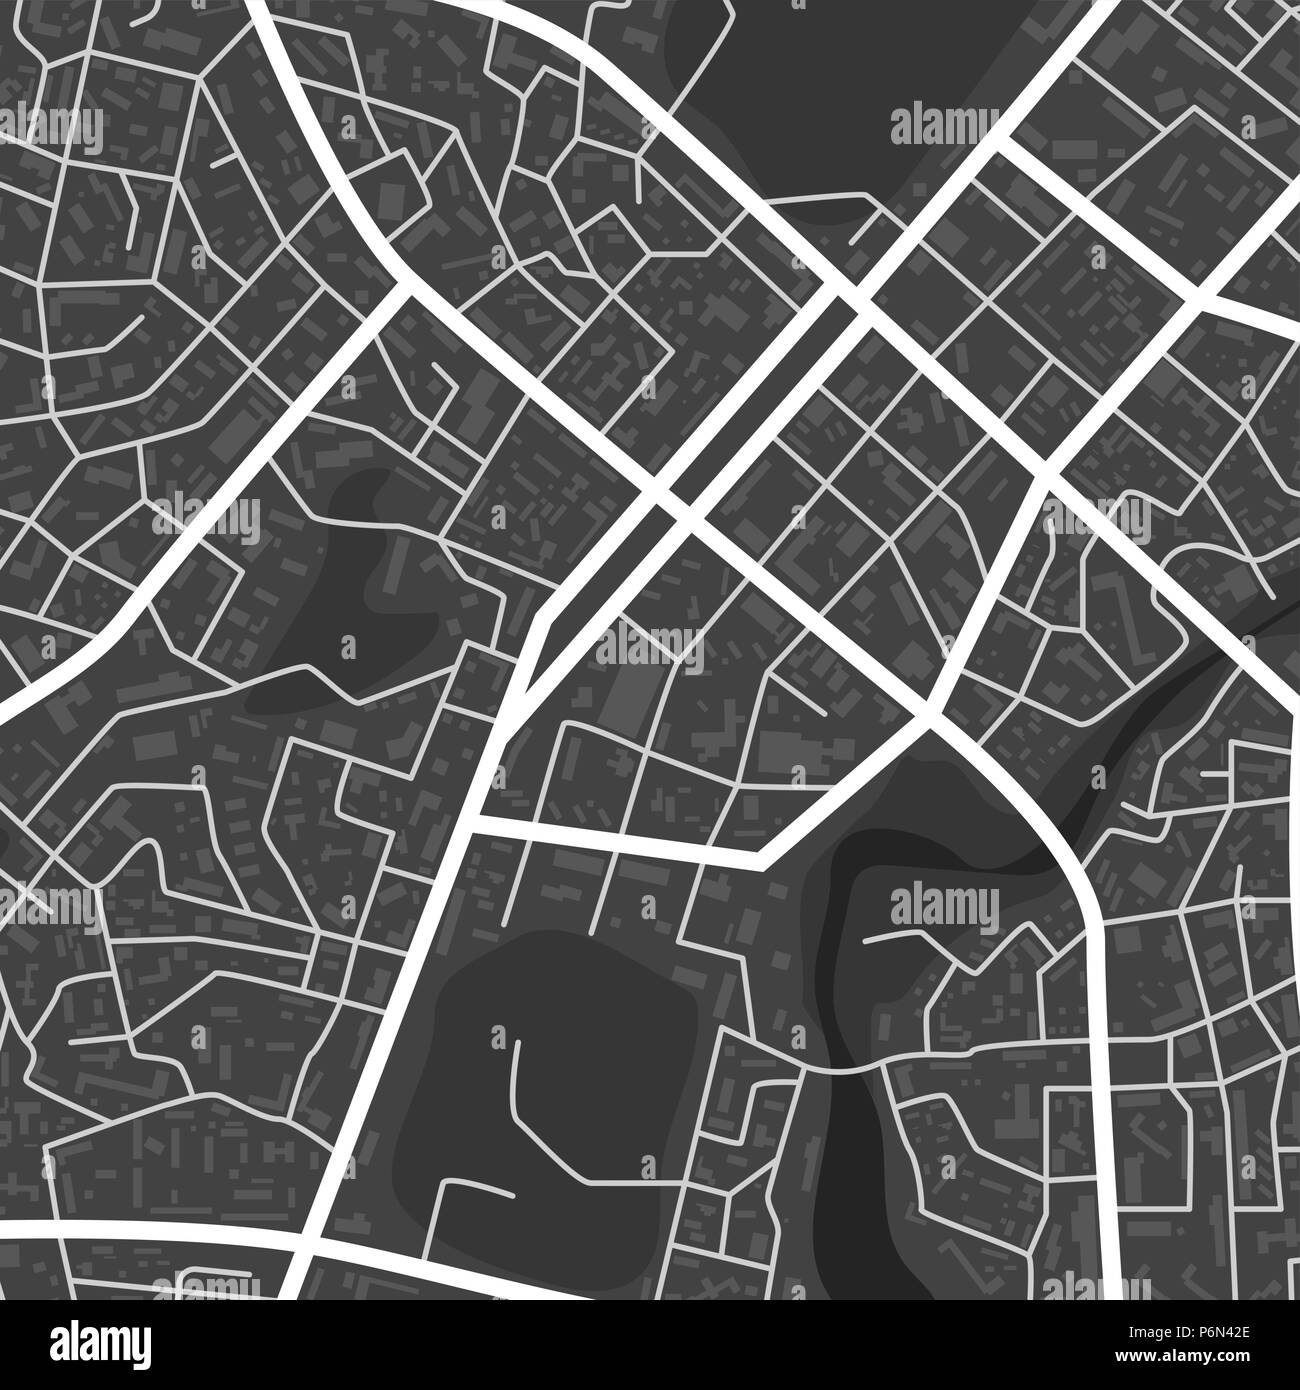 Abstraite noir et blanc plan de la ville. Quartier résidentiel de la ville. Centre-ville plan. Vector illustration Illustration de Vecteur